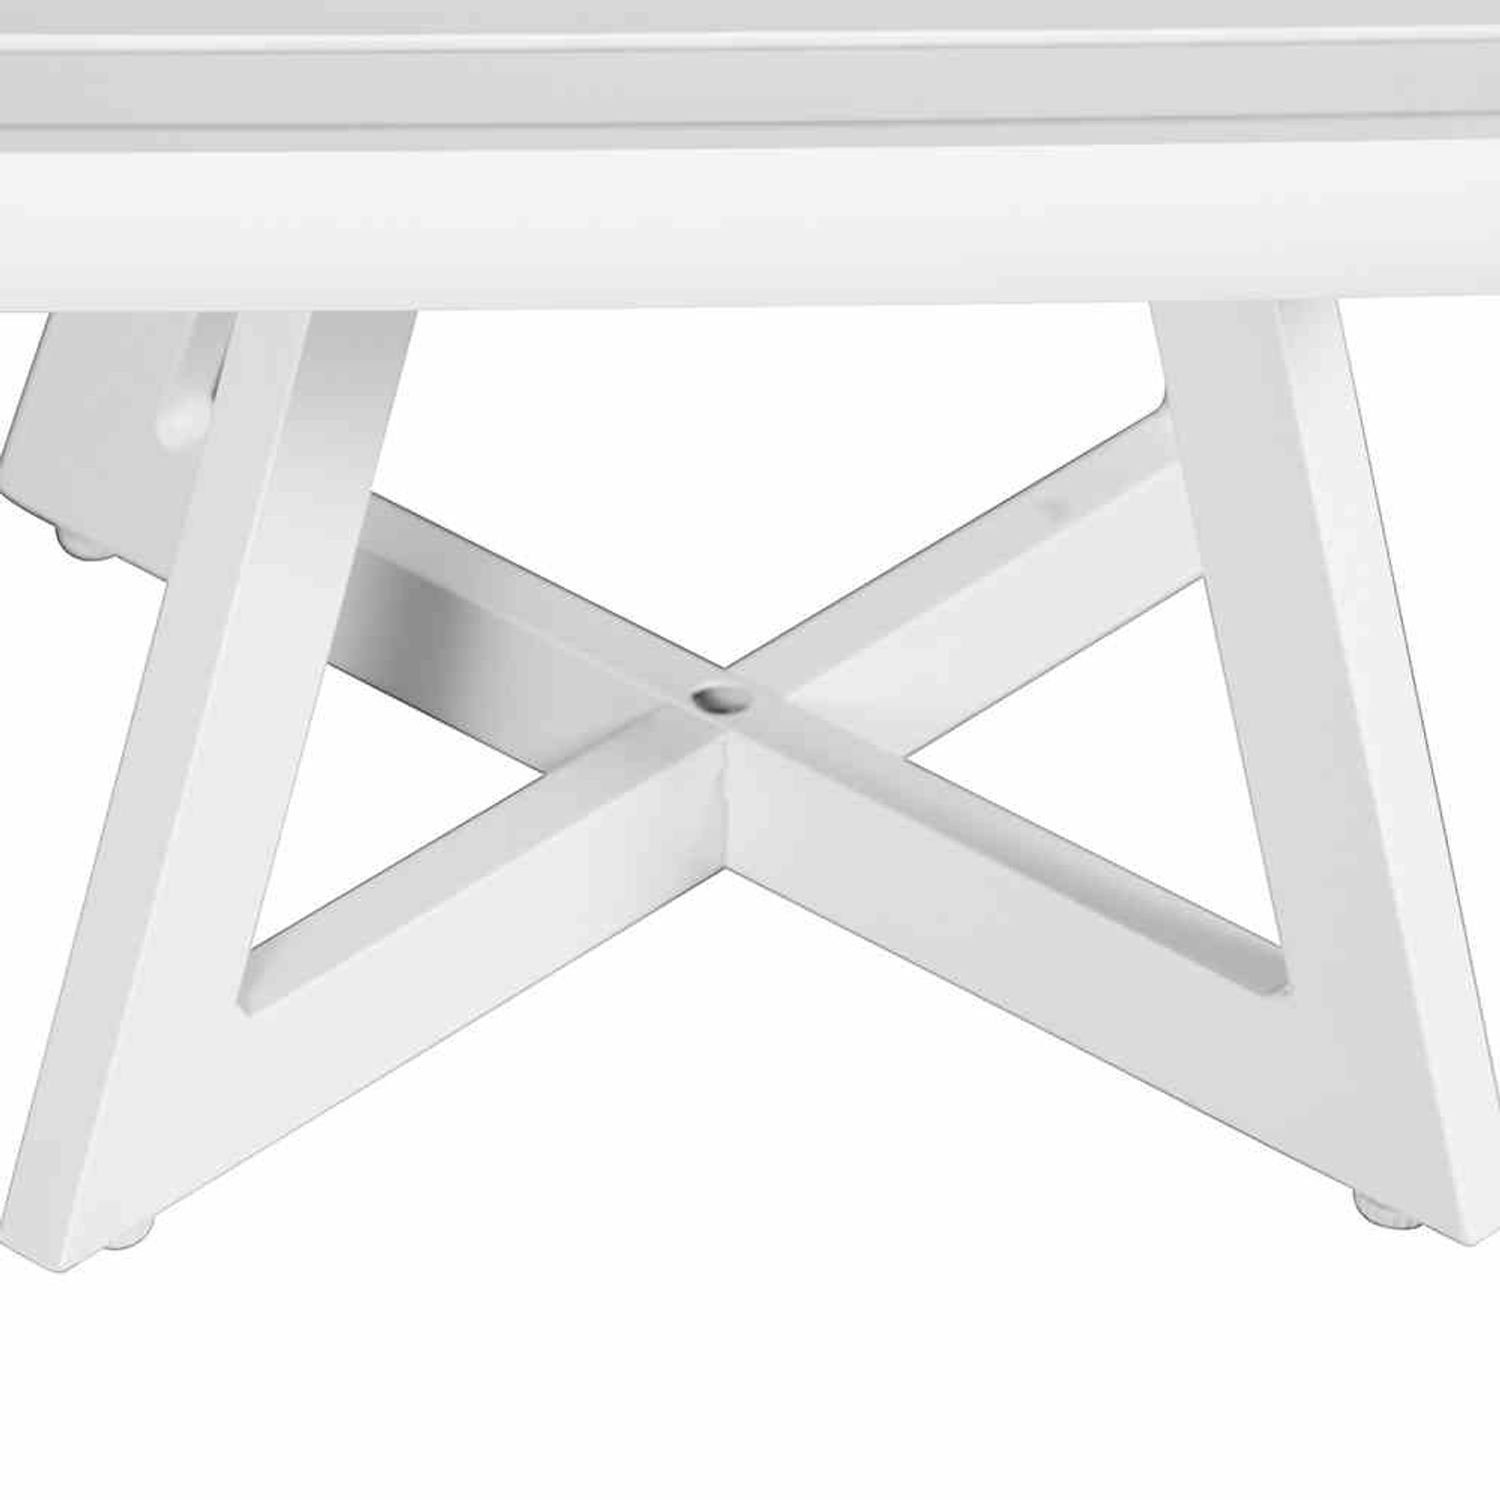 Alexis 50x50 Tisch matt-weiß Gartentisch Lounge Tresentisch Aluminium Gartentisch Siena Garden